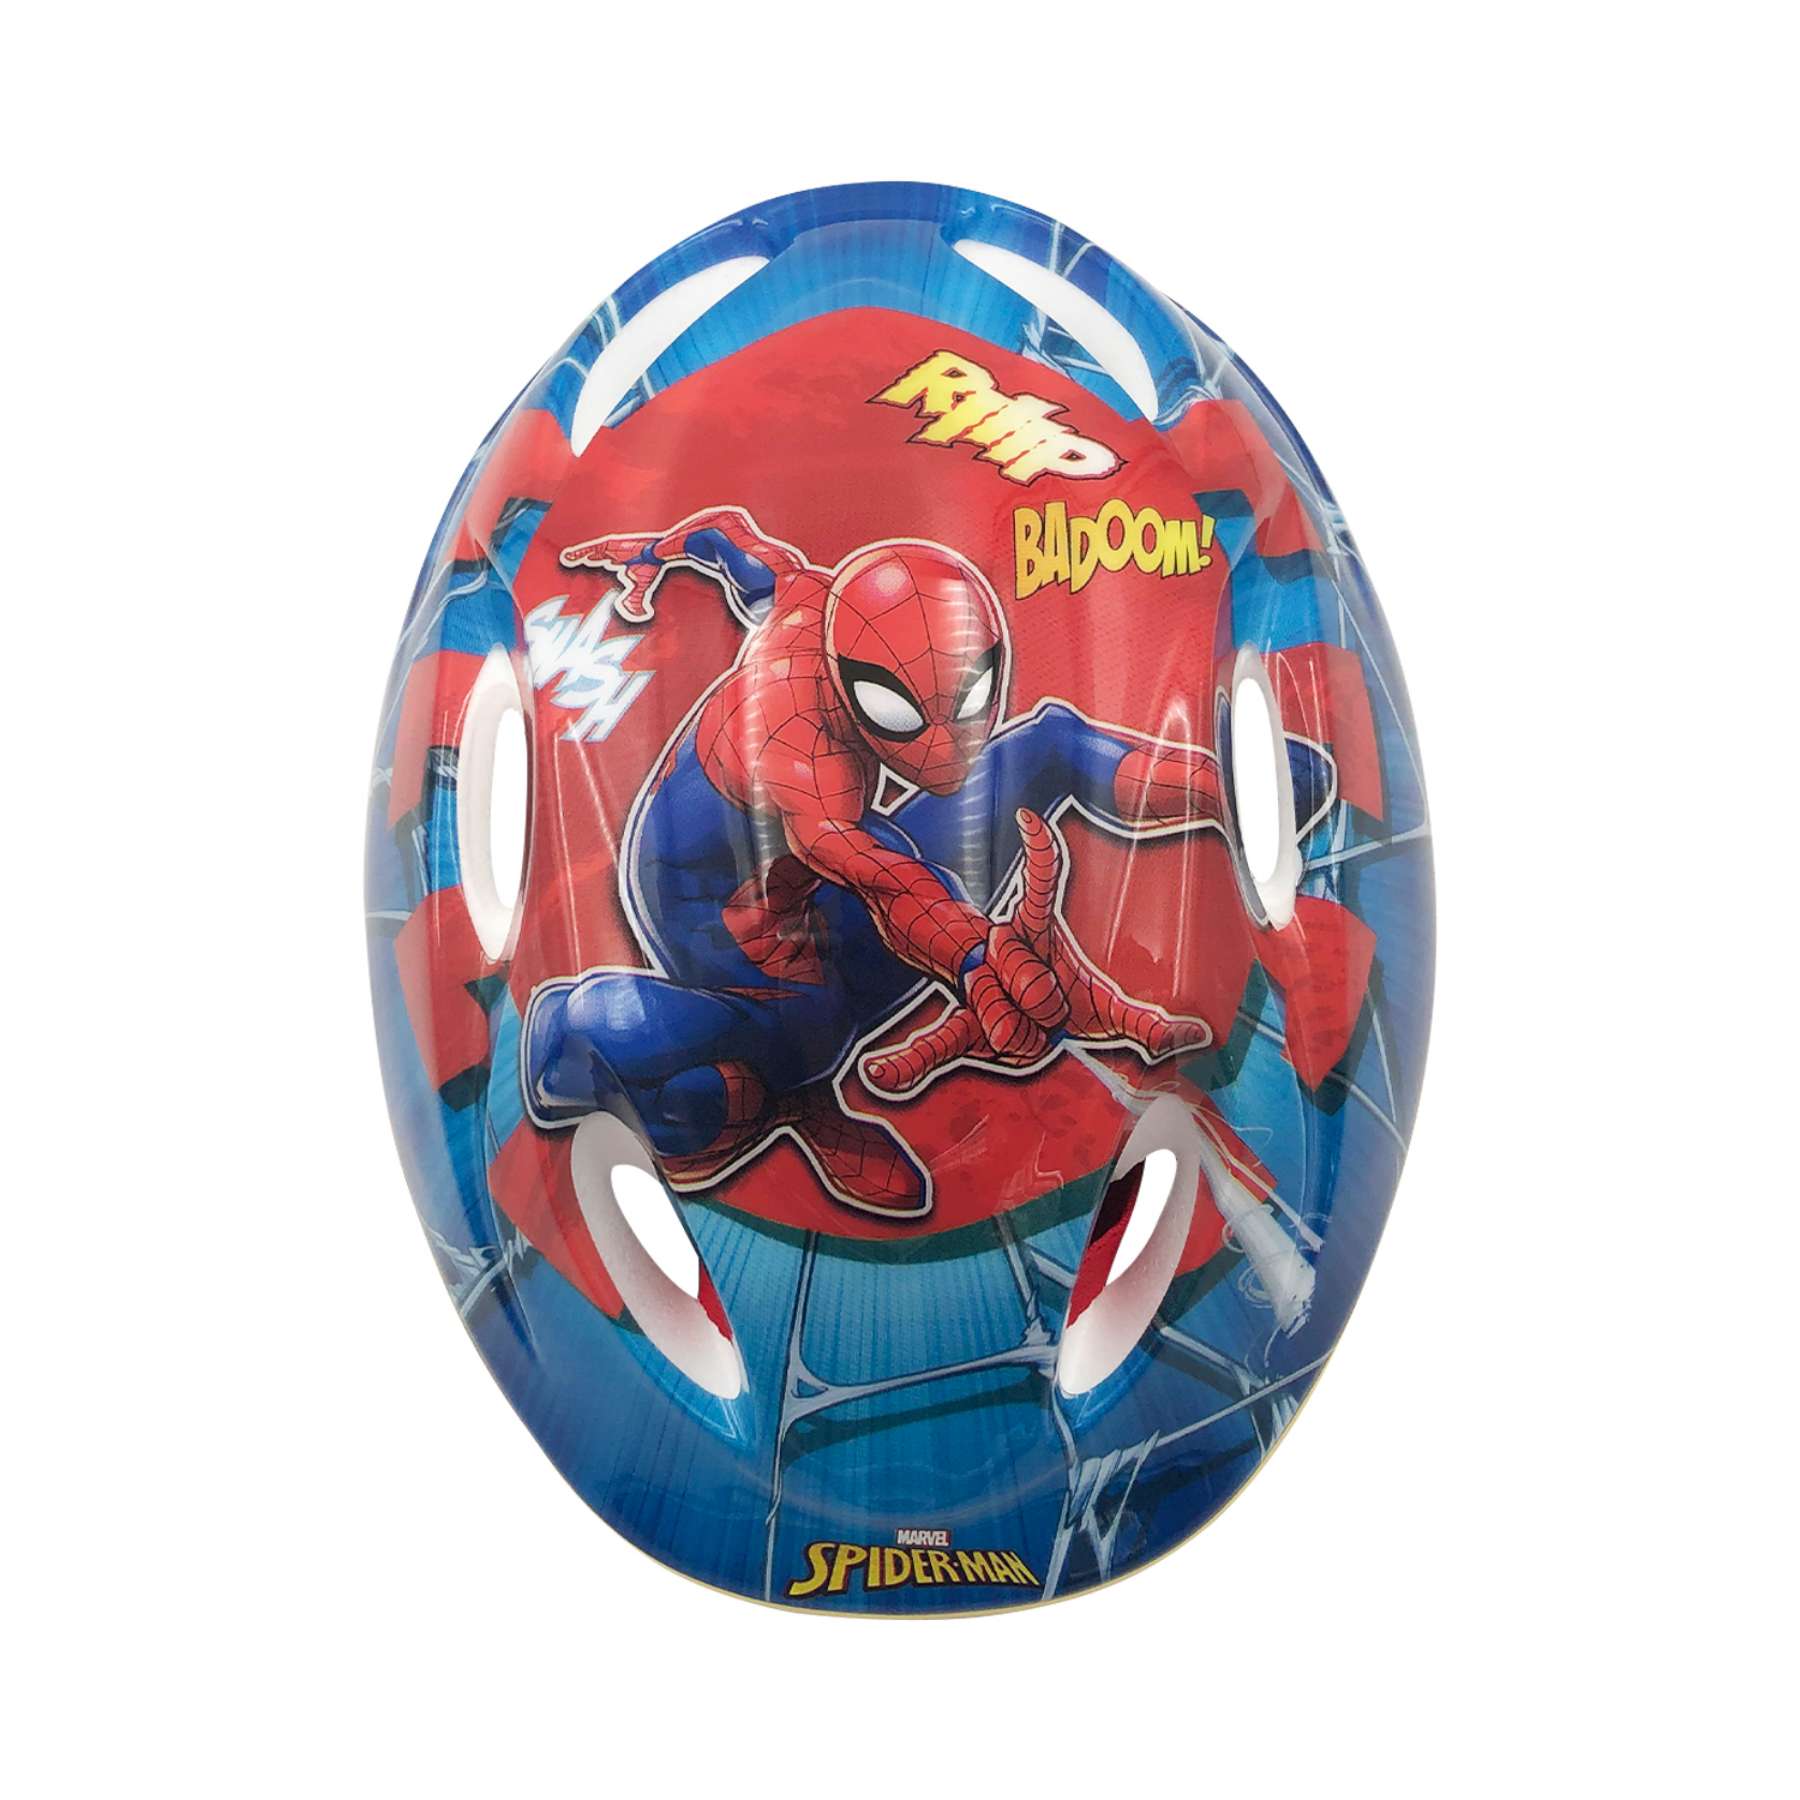 Jeg regner med Fantasifulde For en dagstur Marvel Spiderman Cykelhjelm - Blå rød - 51 - 55 cm